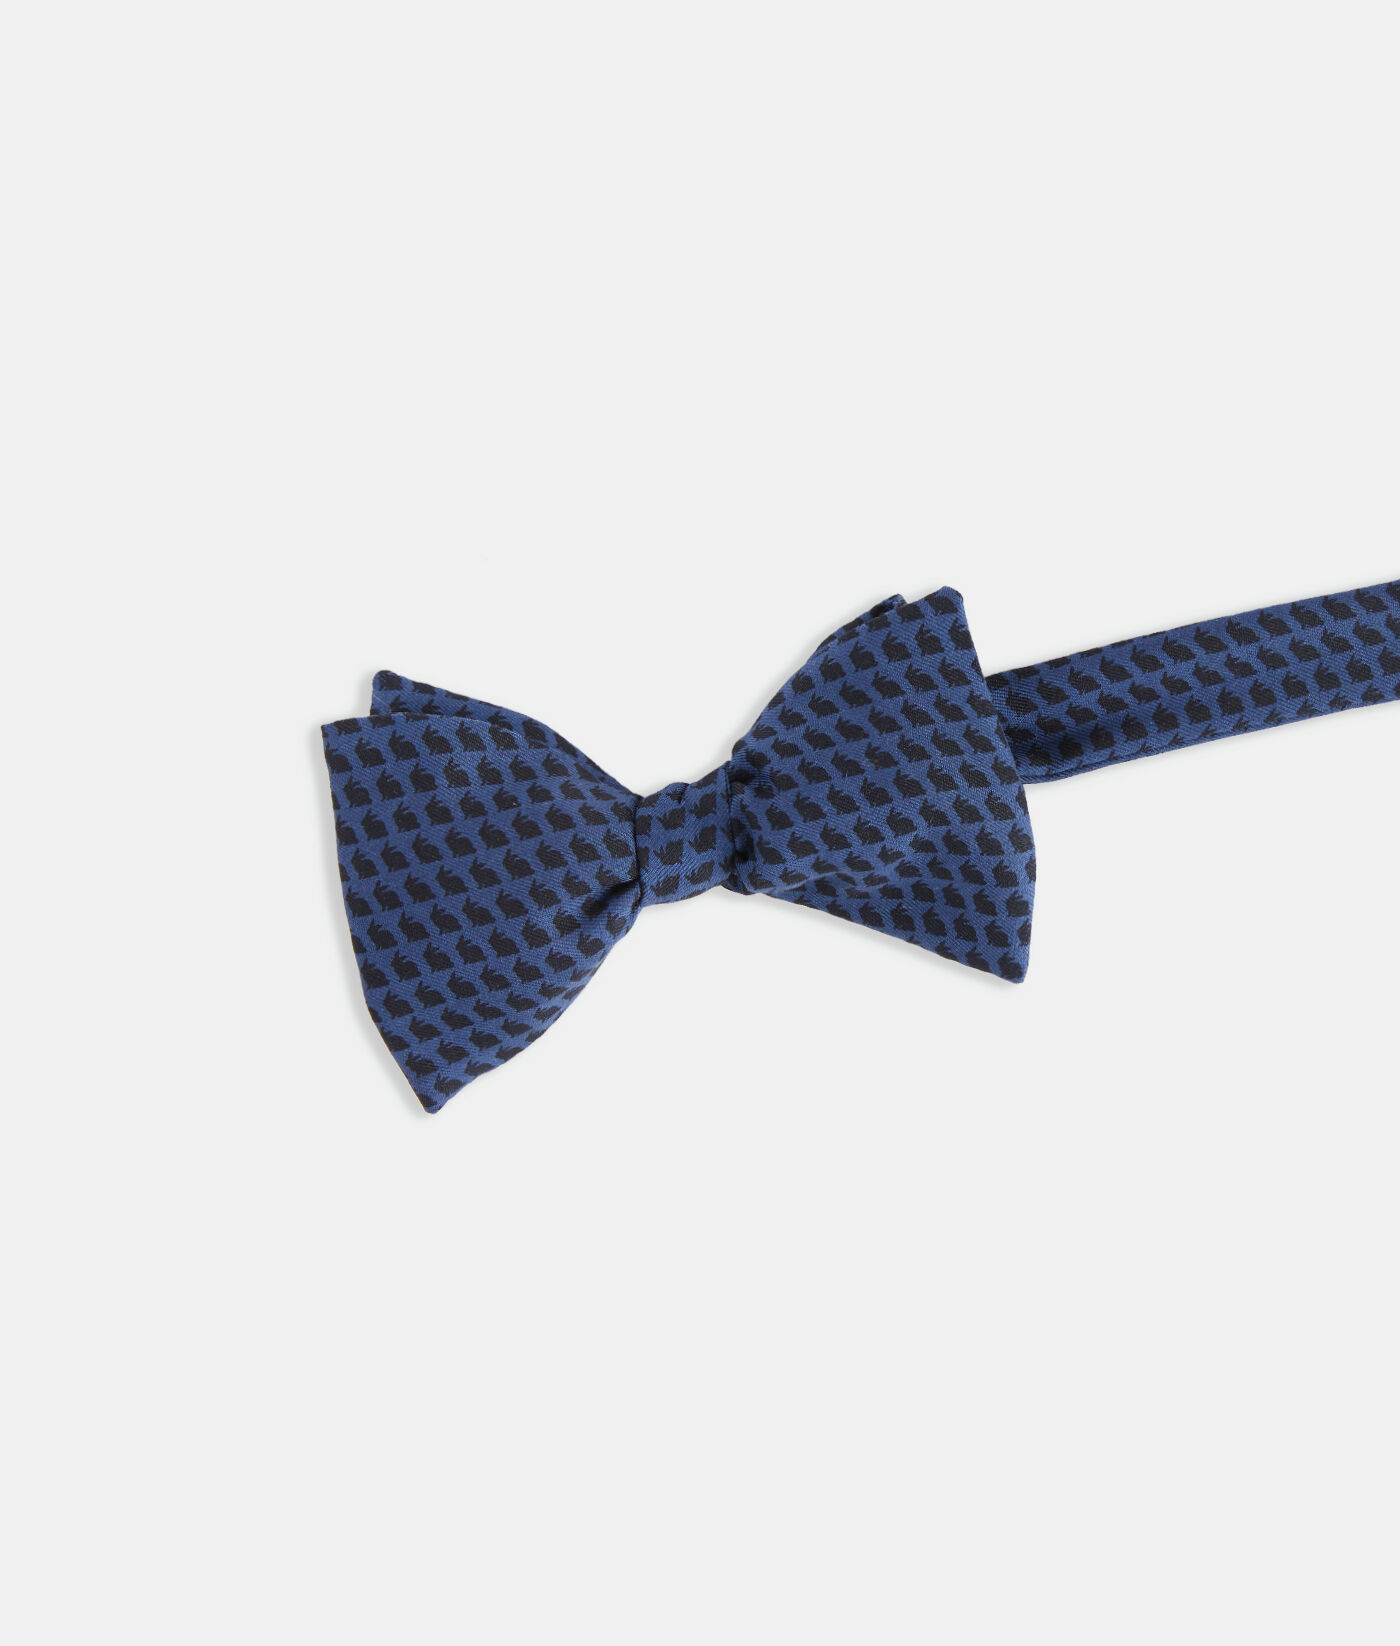 printed bow ties